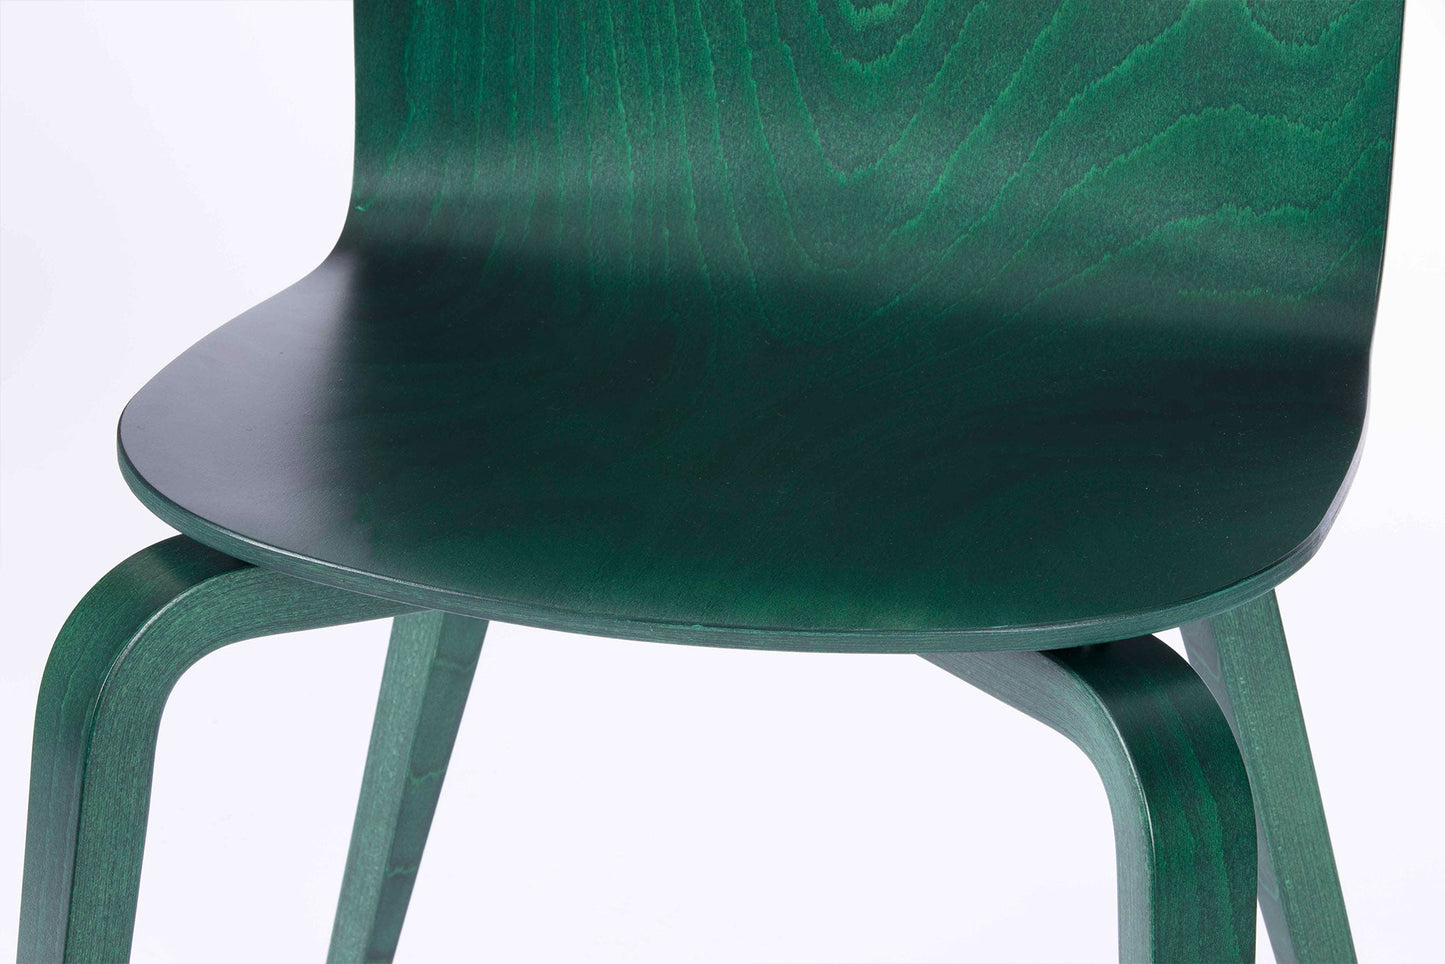 La chaise CL10b x Margaux Keller - Vert